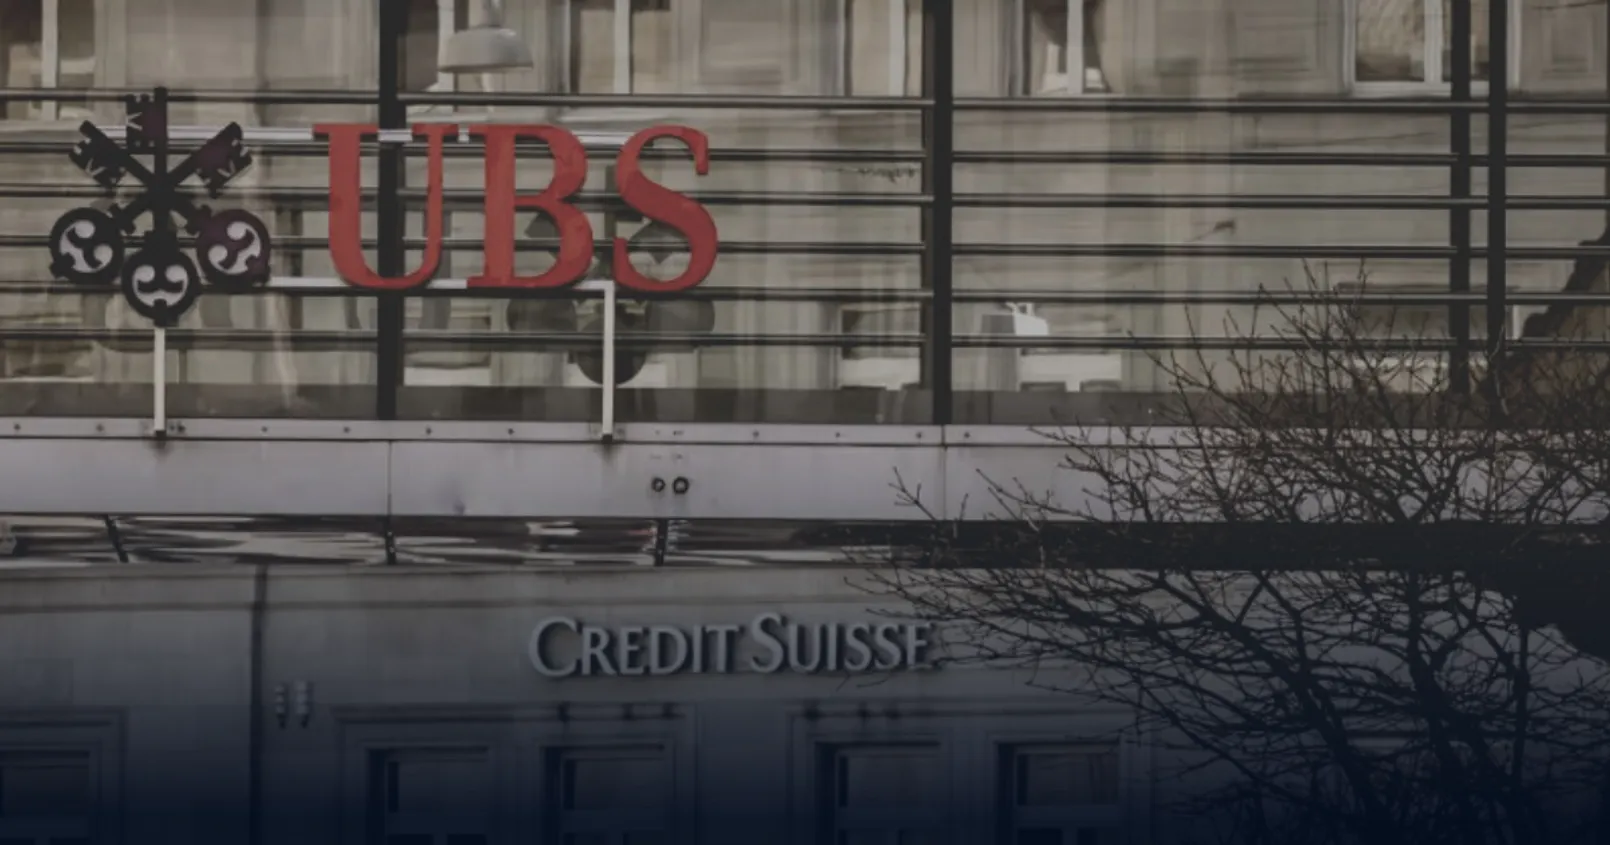 UBS ร่วมมือกับรัฐบาลสวิต เข้าซื้อกิจการ Credit Suisse